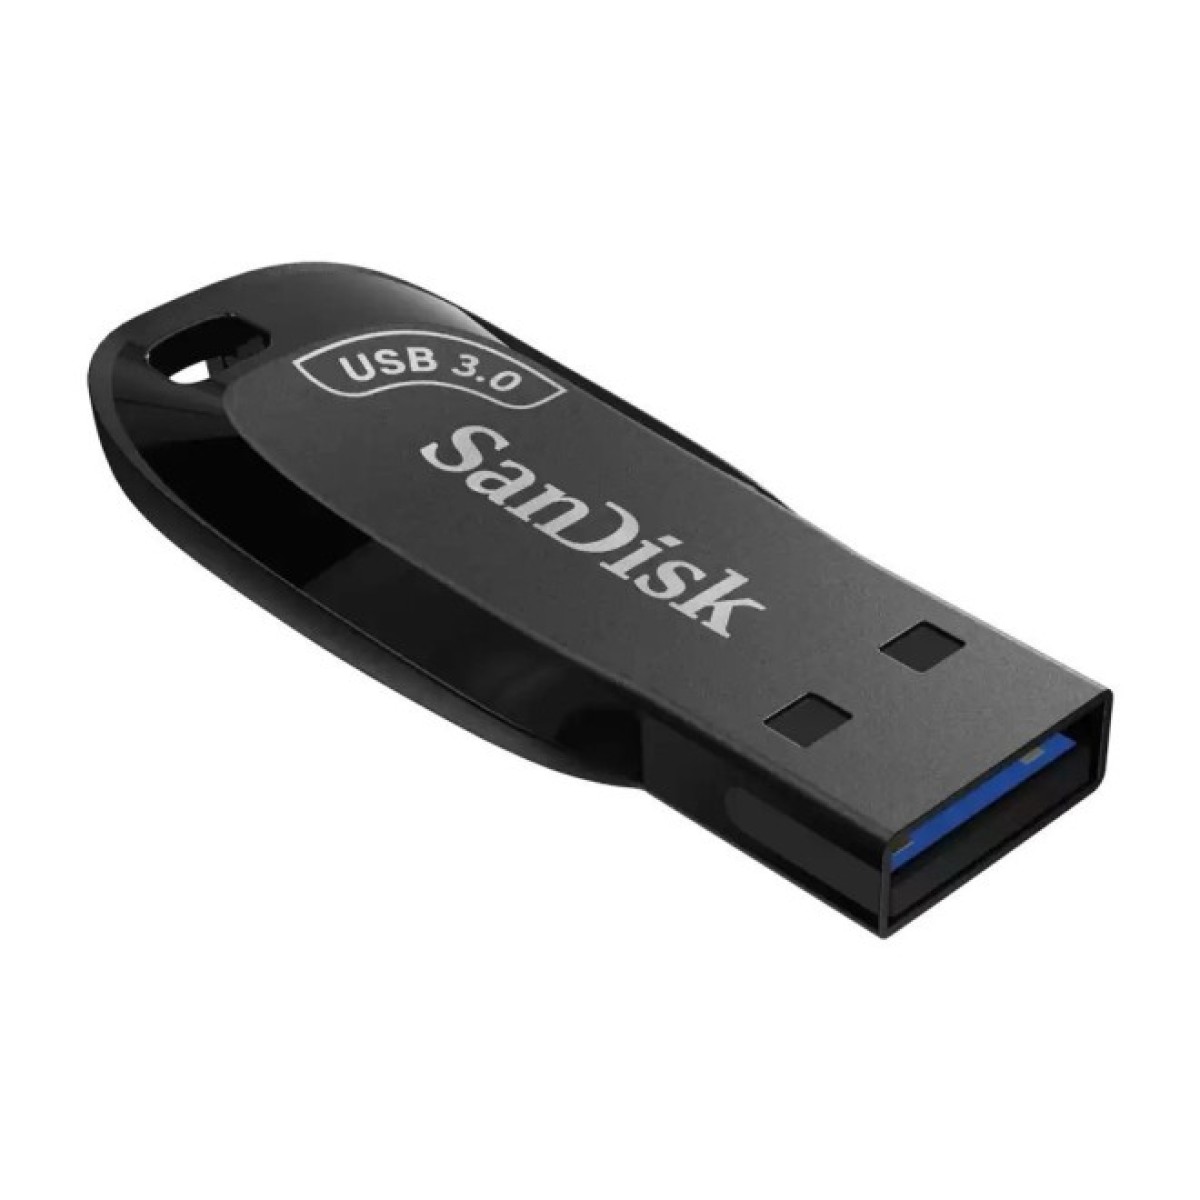 USB флеш накопитель SanDisk 64GB Ultra Shift USB 3.0 (SDCZ410-064G-G46) 256_256.jpg